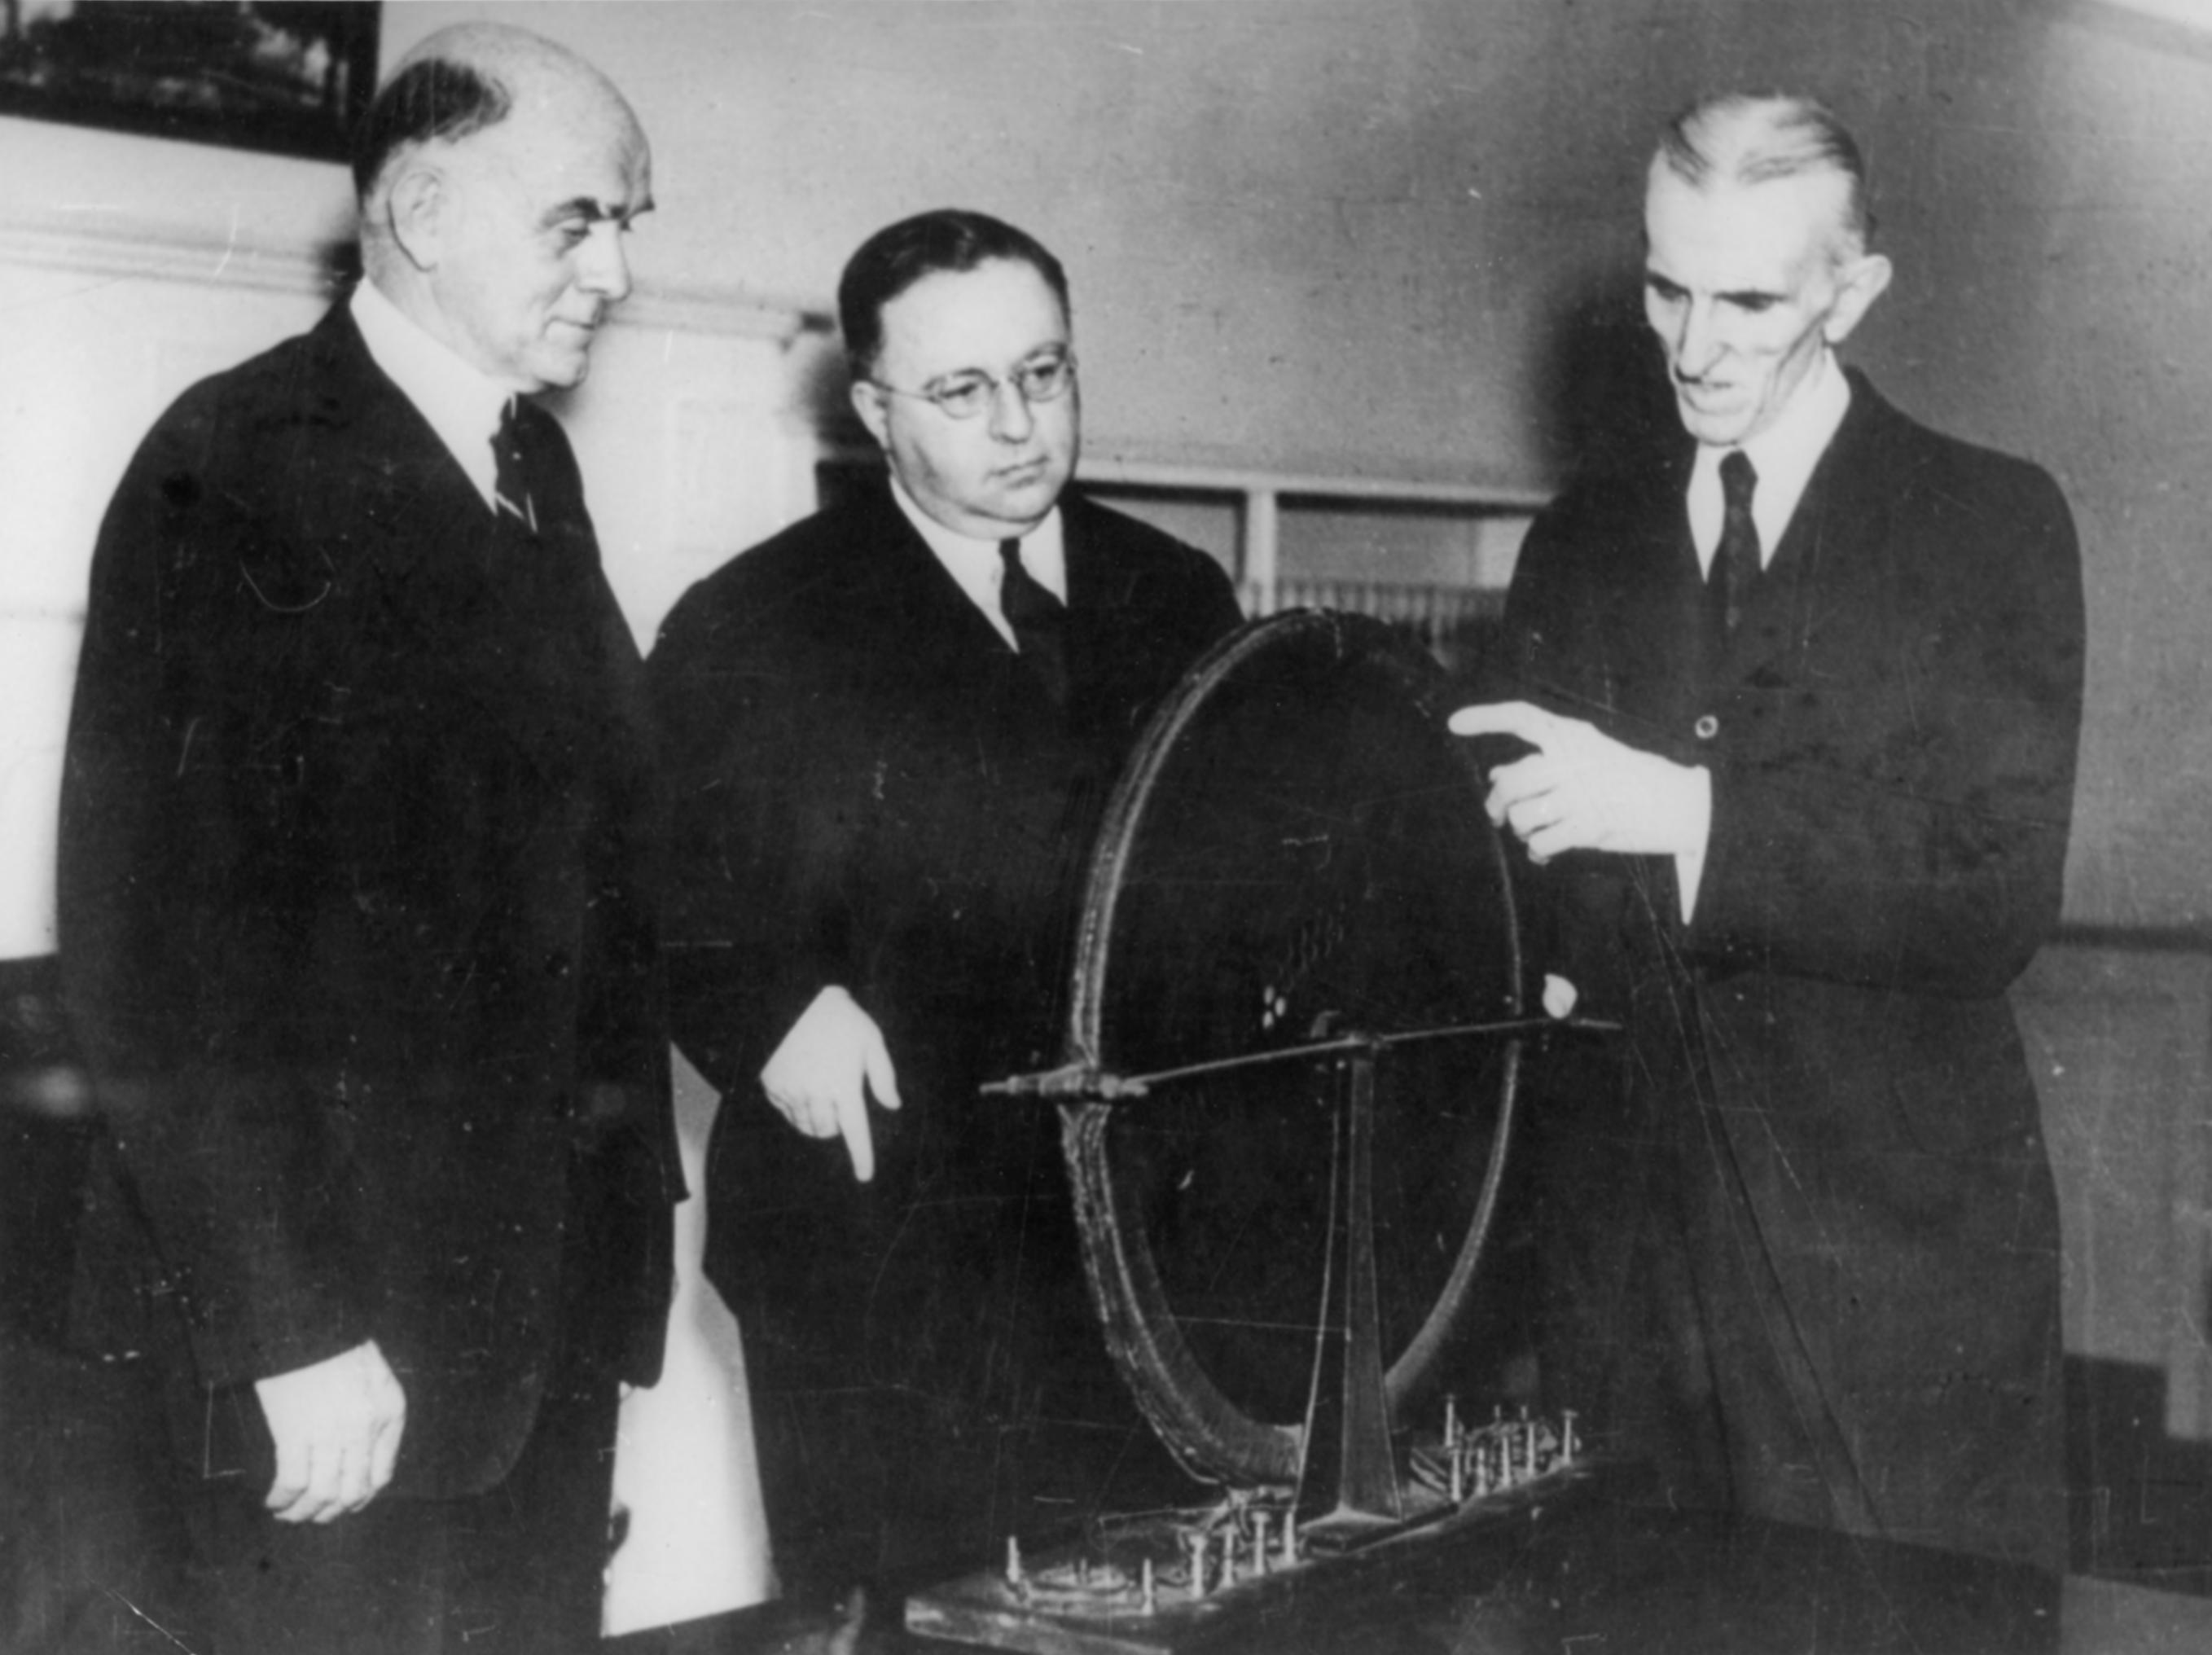 Inženjeri kompanije Westinghouse u Teslinom laboratoriju. Tesla im objašnjava princip rada okretnog magnetskog polja.